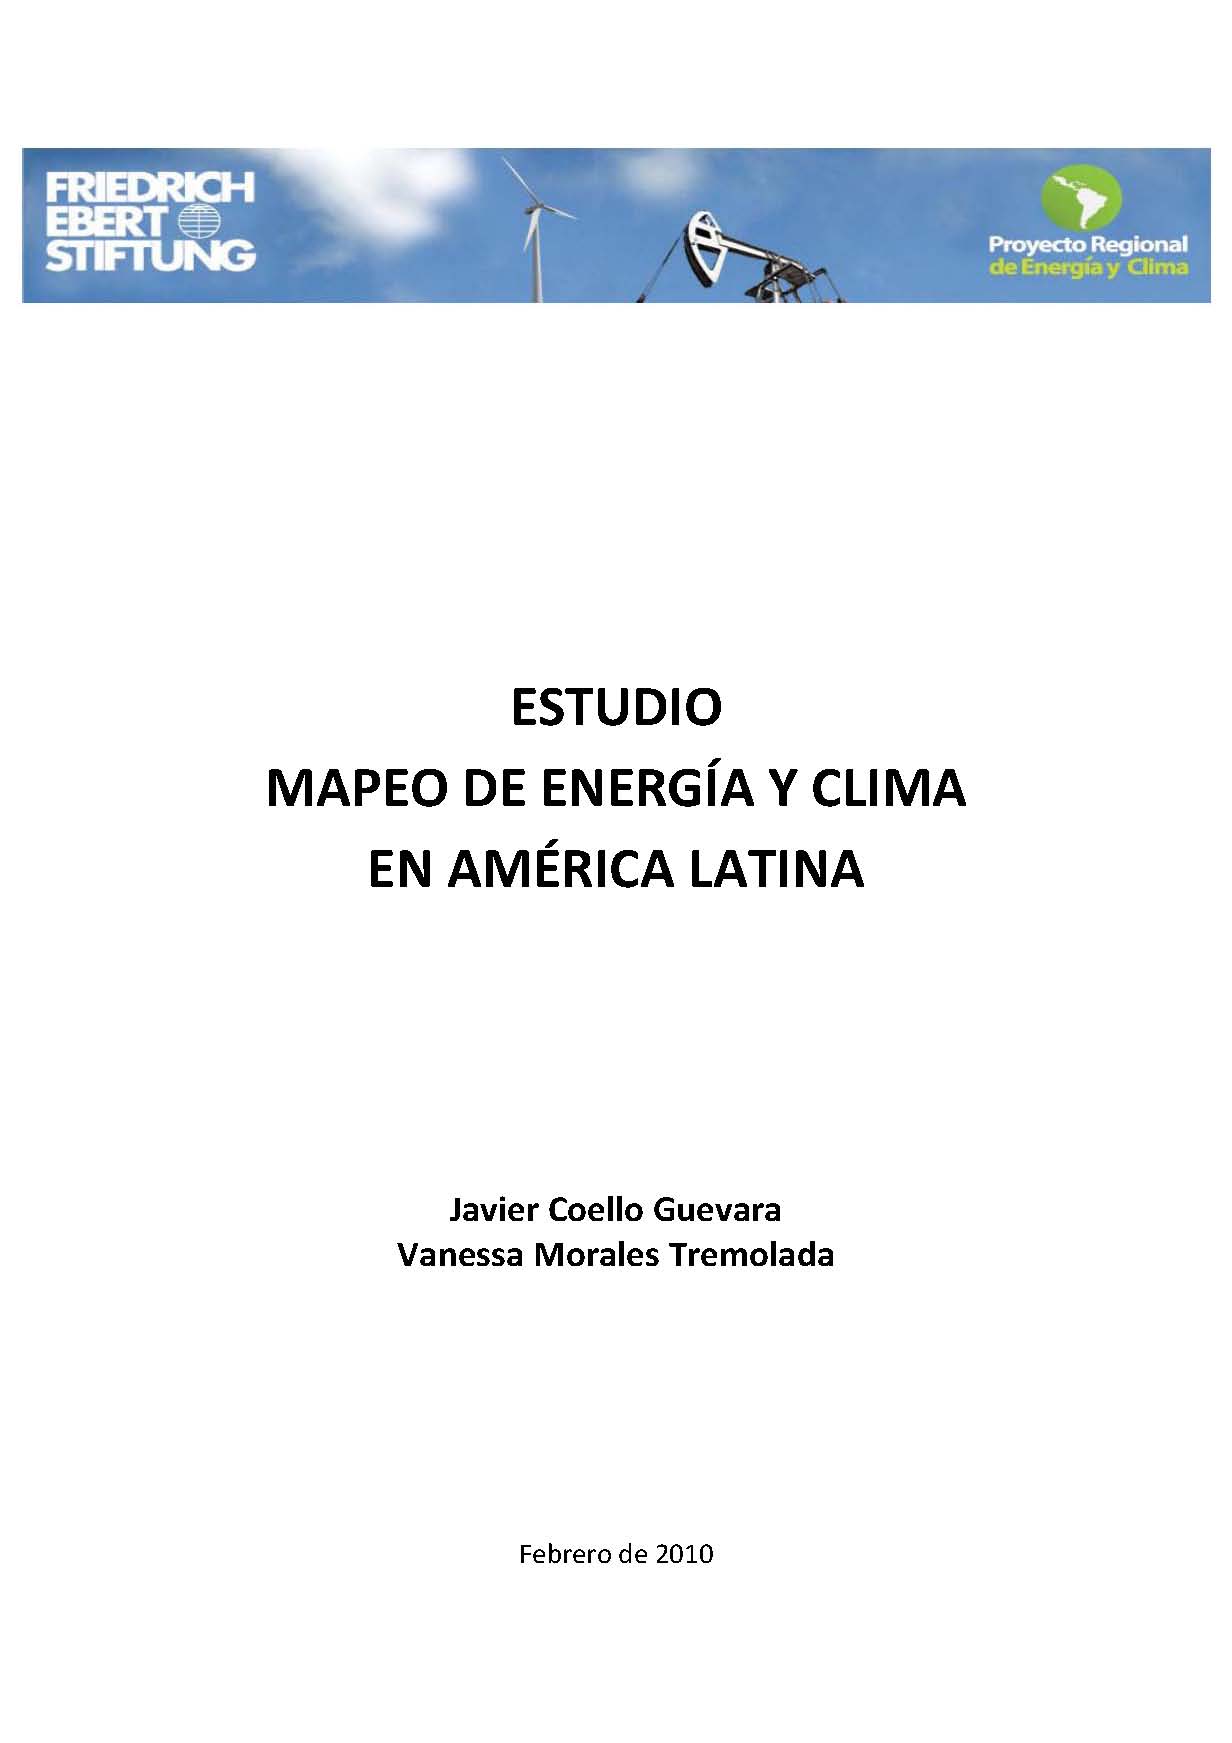 Estudio mapeo de energía y clima en América Latina